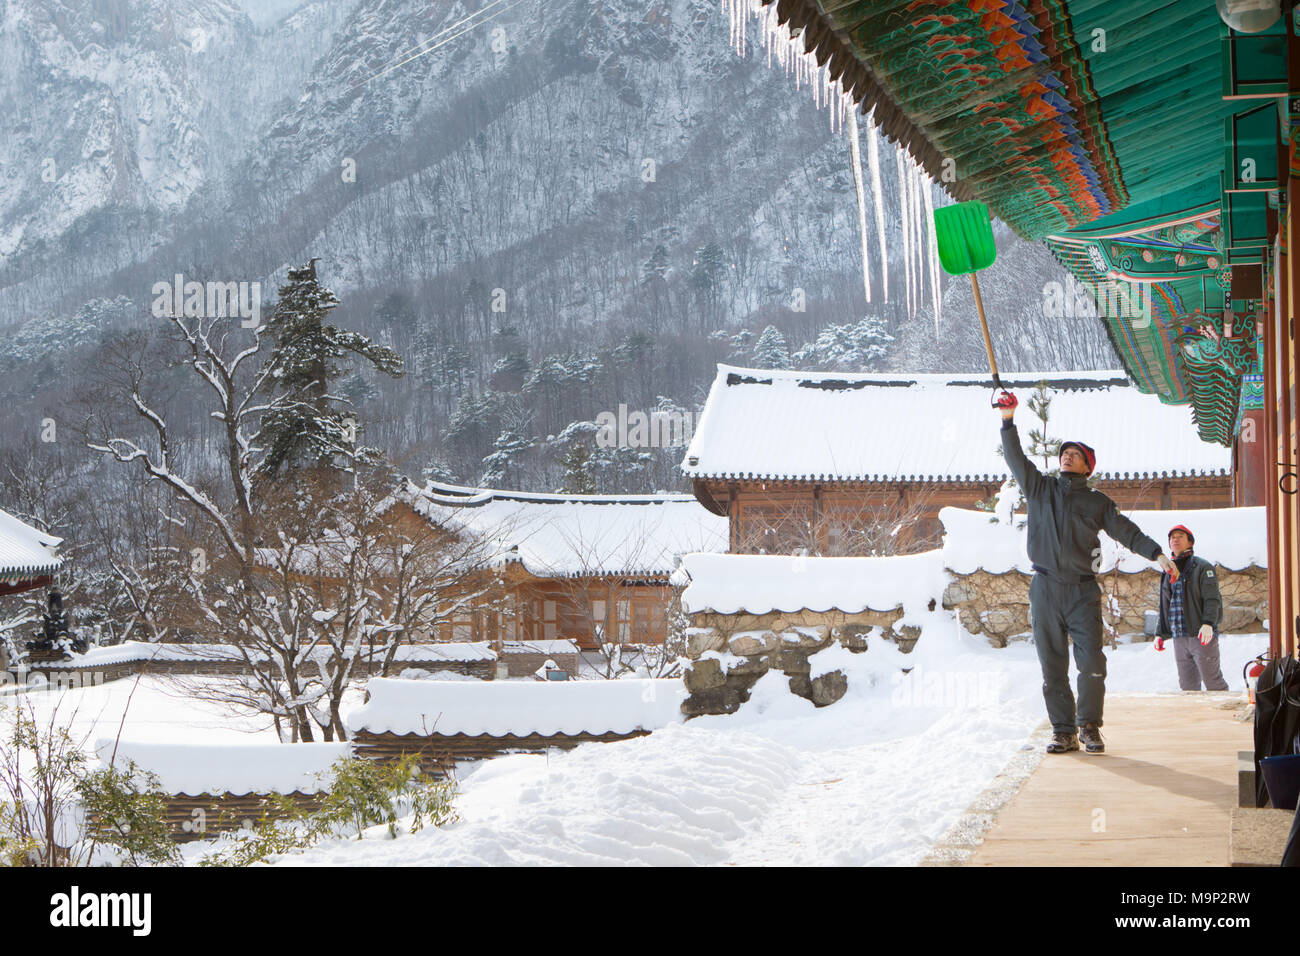 Ein Mönch ist Entfernen von Eis auf dem Dach des Buddhistischen Sinheung-sa Tempel in Seoraksan Nationalpark, Gangwon-do, Südkorea. Seoraksan ist ein schönes und iconic National Park in den Bergen in der Nähe von Sokcho in der Region Gangwon-do in Südkorea. Der Name bezieht sich auf verschneite Felsen bergen. Satz gegen die Landschaft sind zwei Buddhistische Tempel: Sinheung-sa und Beakdam-sa. Diese Region ist Gastgeber der Olympischen Winterspiele im Februar 2018. Seoraksan ist ein schönes und iconic National Park in den Bergen in der Nähe von Sokcho in der Region Gangwon-do in Südkorea. Der Name bezieht sich auf verschneite Felsen bergen. Einstellen Stockfoto